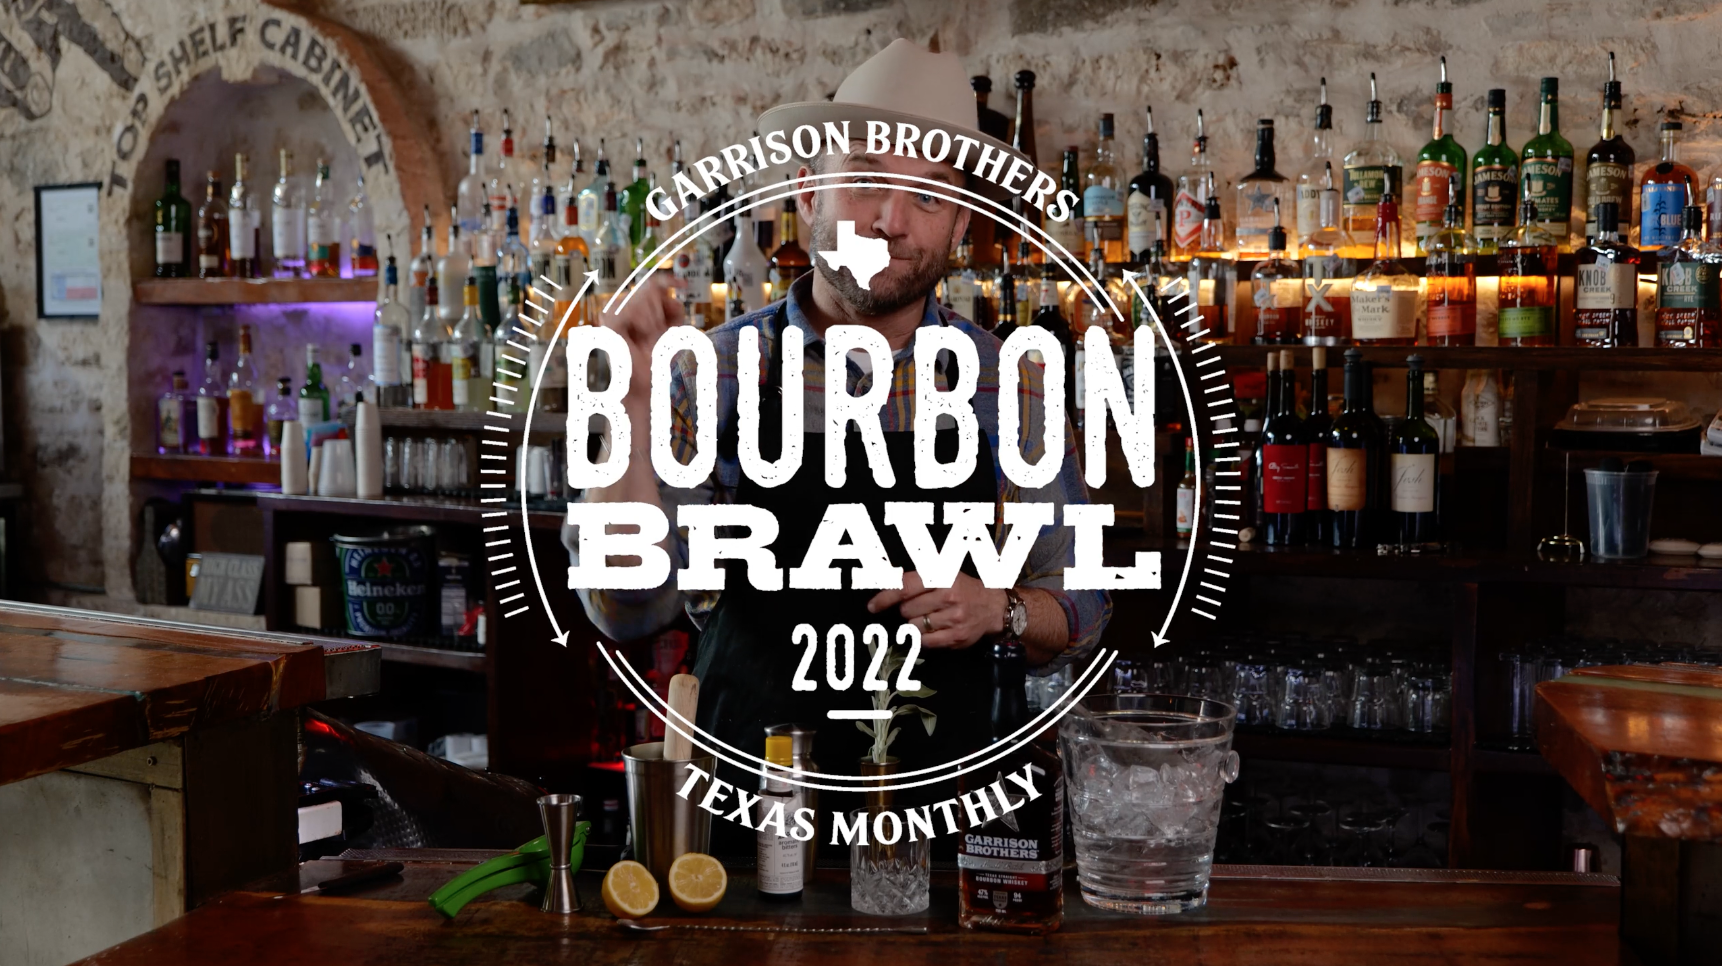 Garrison Bourbon Brawl Promo 2022